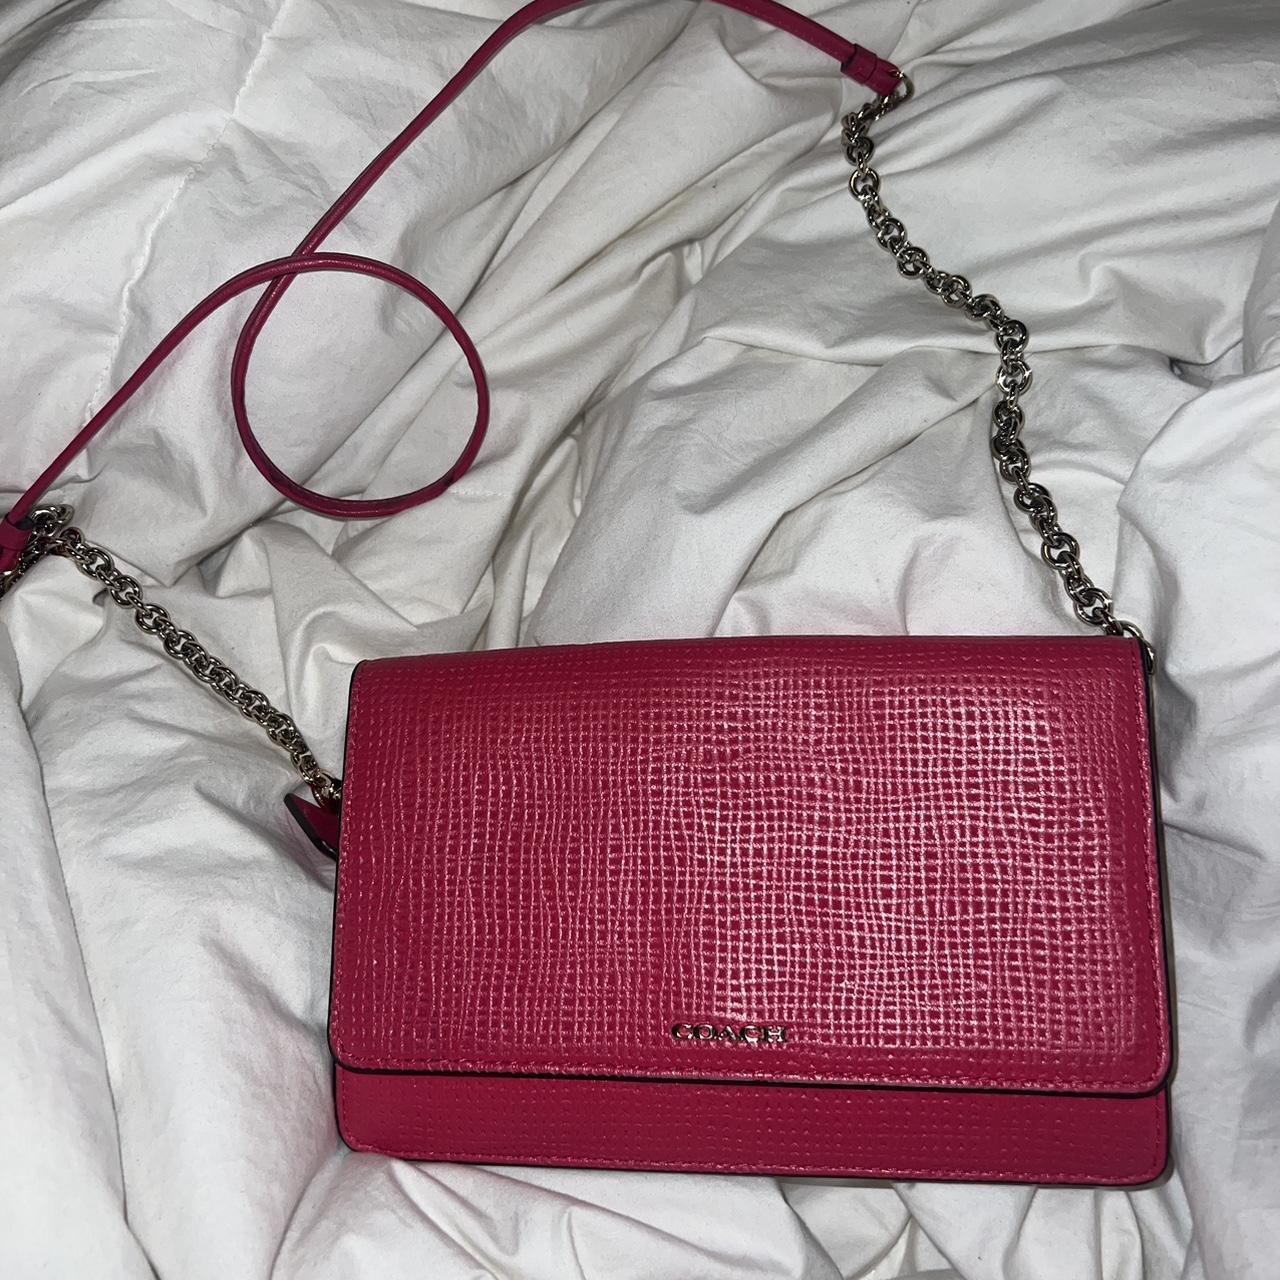 Stylish Hot Pink Coach Buckle Demi Handbag